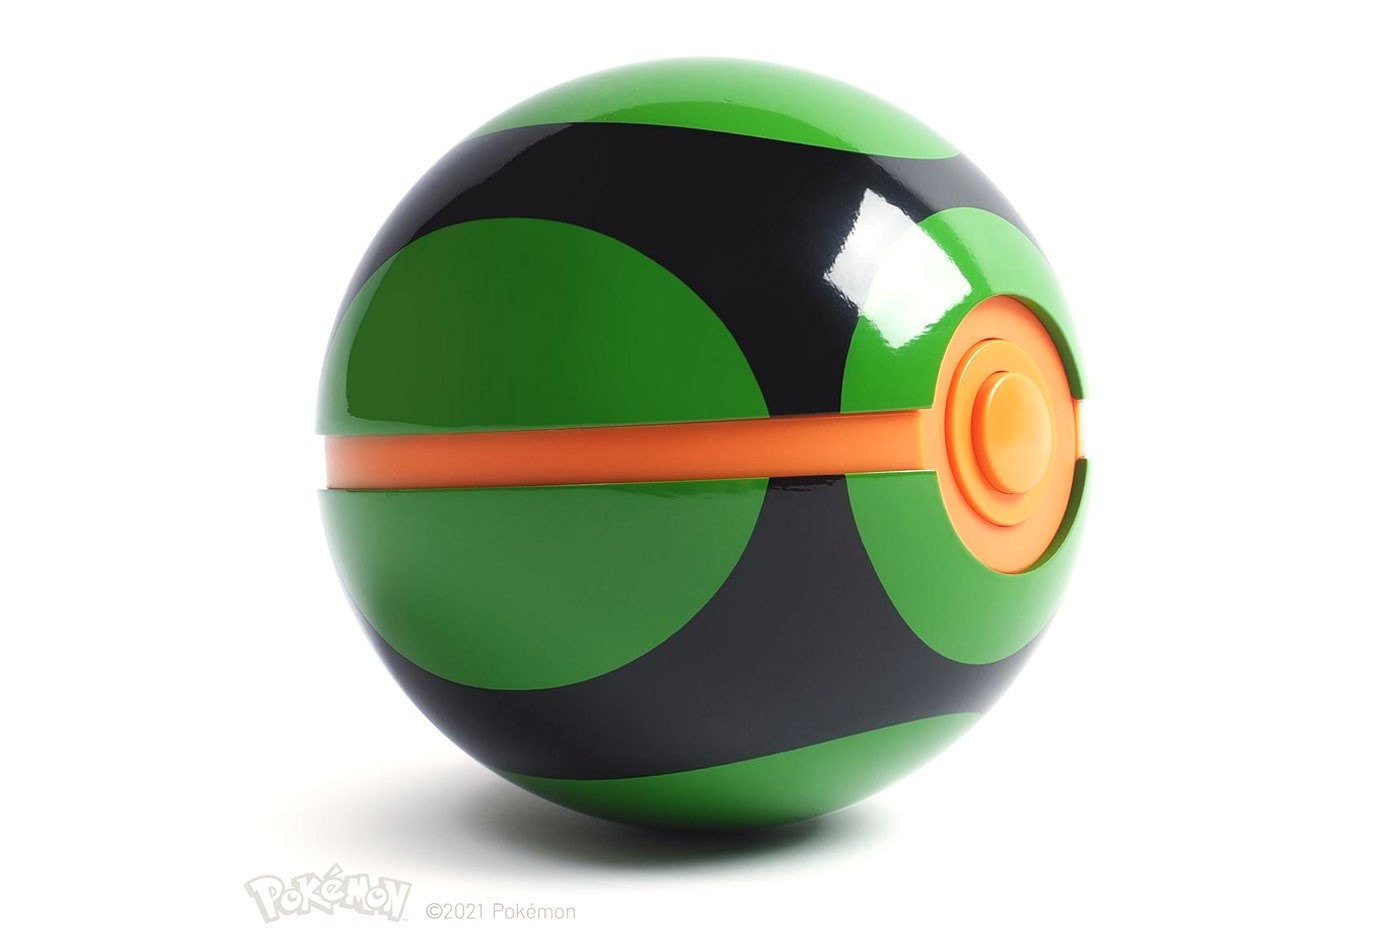 官方授權 1:1 尺寸收藏級 Dusk Ball「黑暗球」正式登場